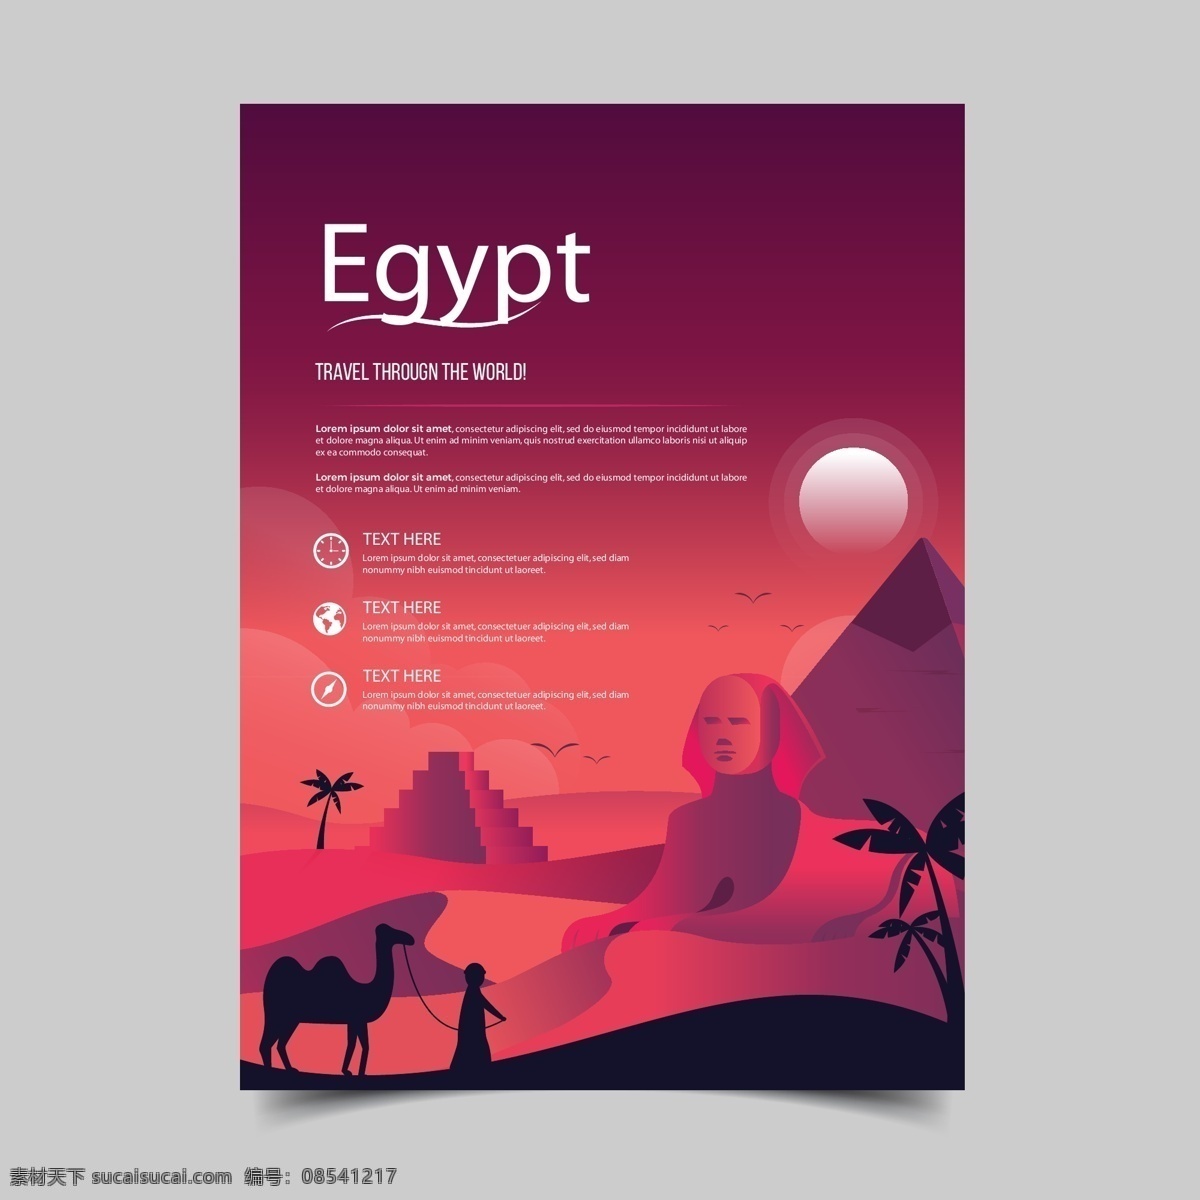 埃及旅游海报 埃及景观 埃及景点 埃及海报 矢量金字塔 彩色渐变背景 埃及风景 矢量骆驼 沙漠插画 旅游元素 旅游素材 旅行元素 旅行素材 旅行社海报 旅行社单张 旅行社传单 旅行广告 旅游